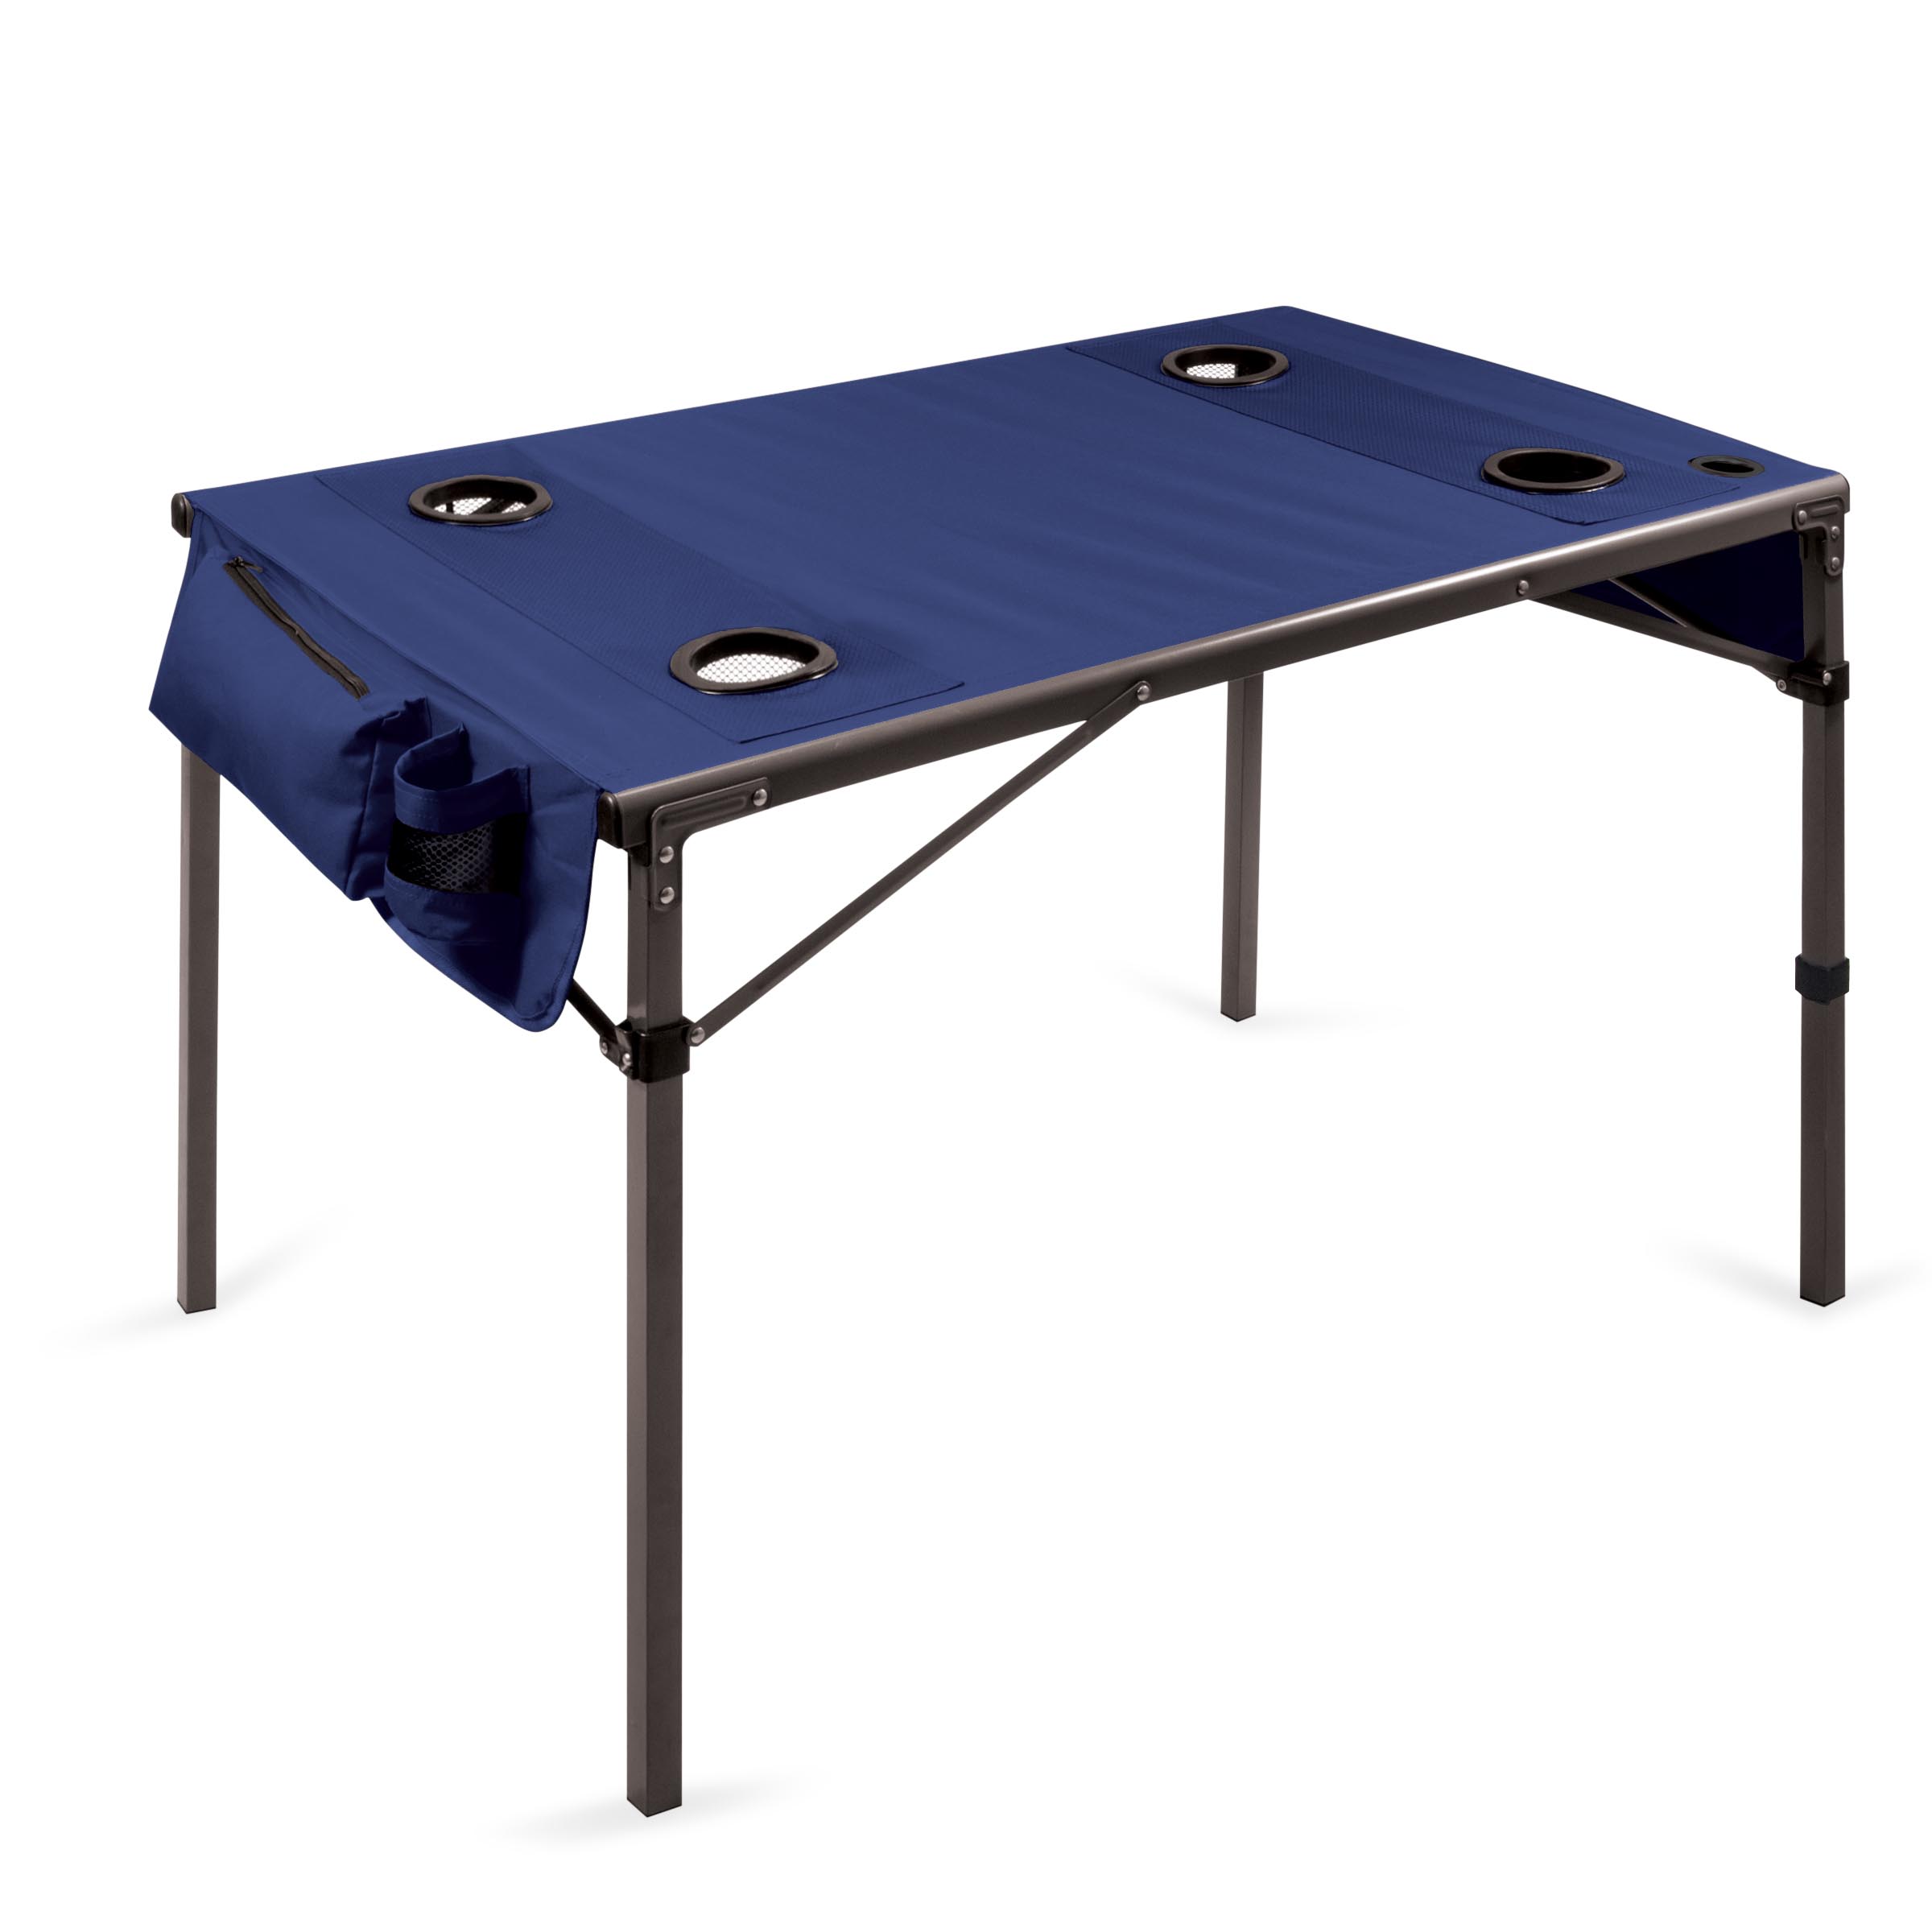 【美國Picnic Time】TRAVEL TABLE 超輕量野餐折疊桌(藍)